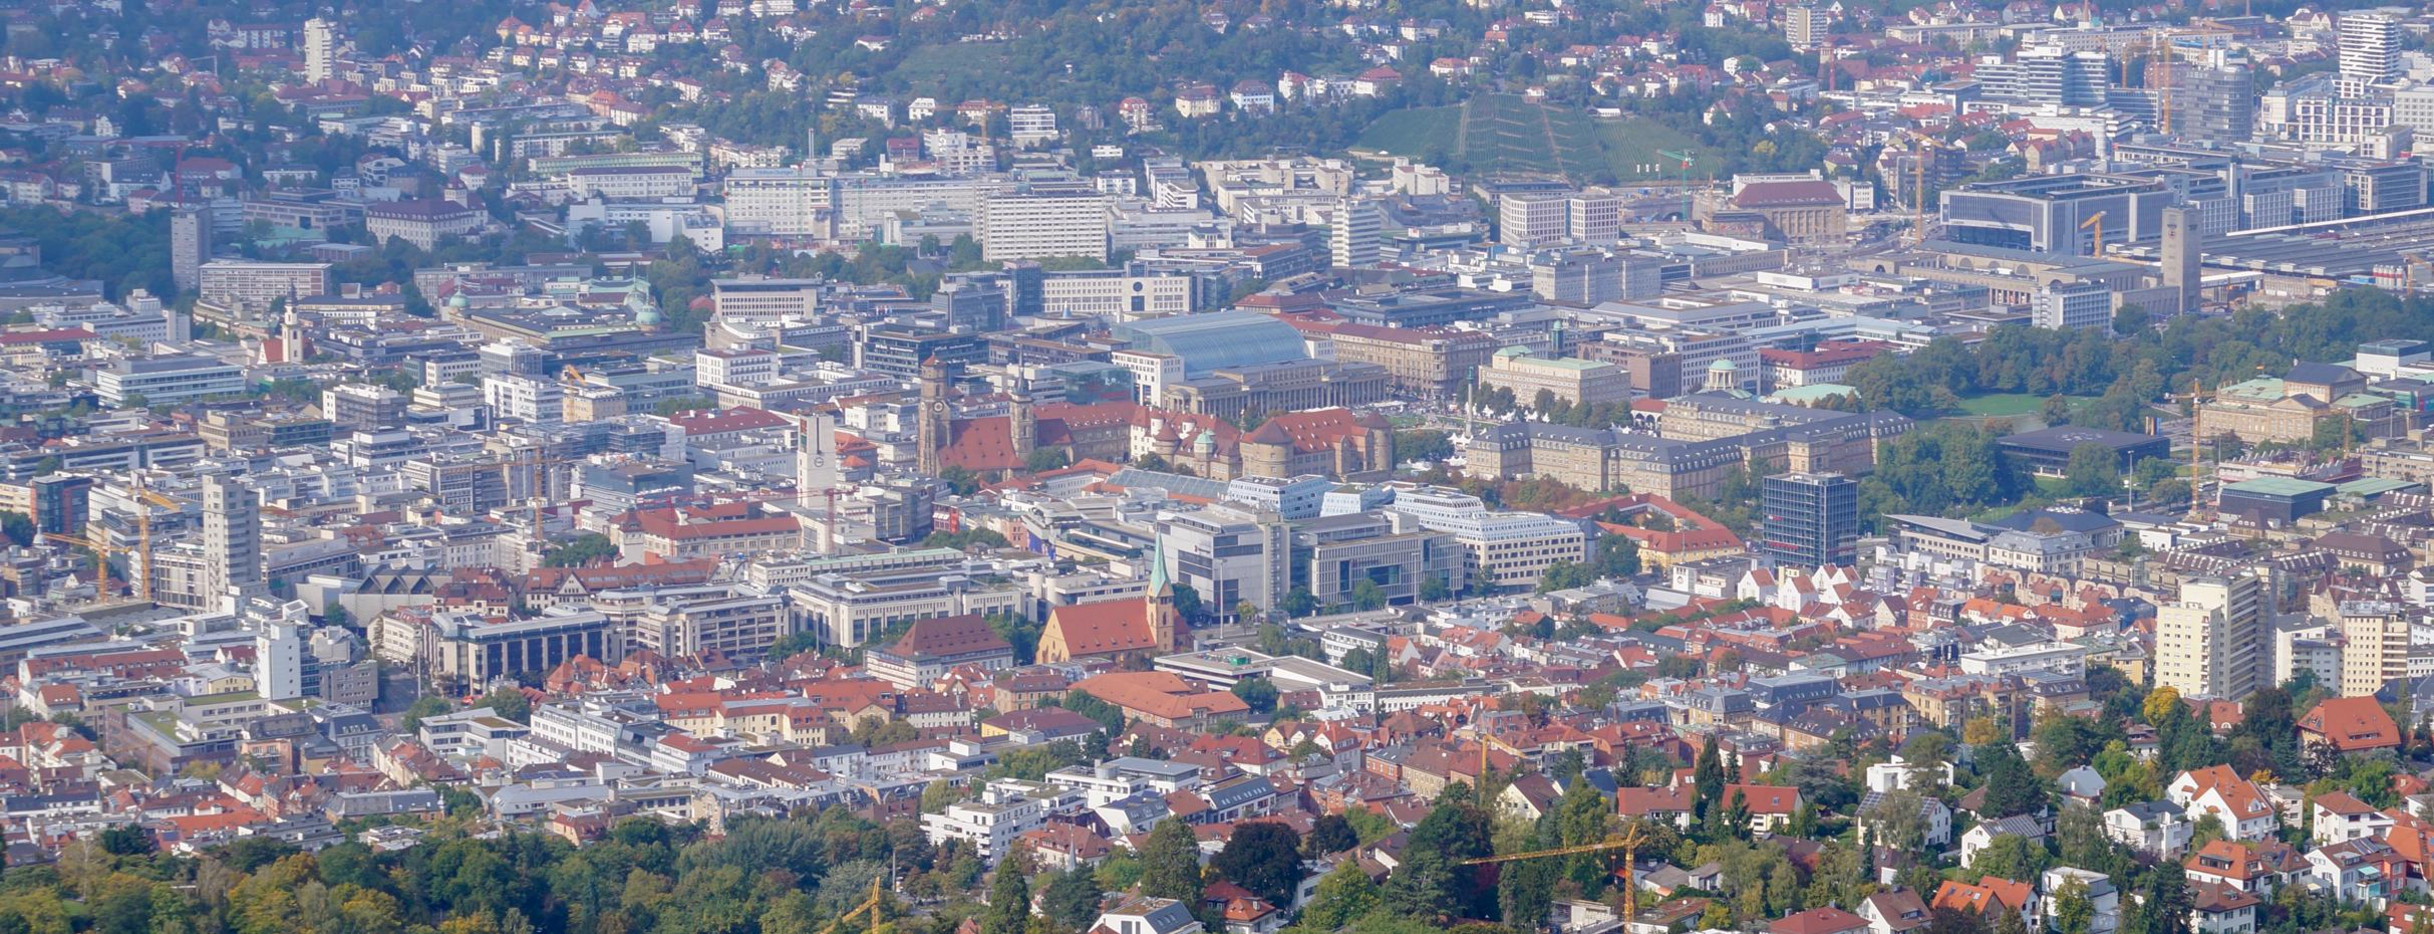 Blick vom Fernsehturm auf die Landeshauptstadt Stuttgart